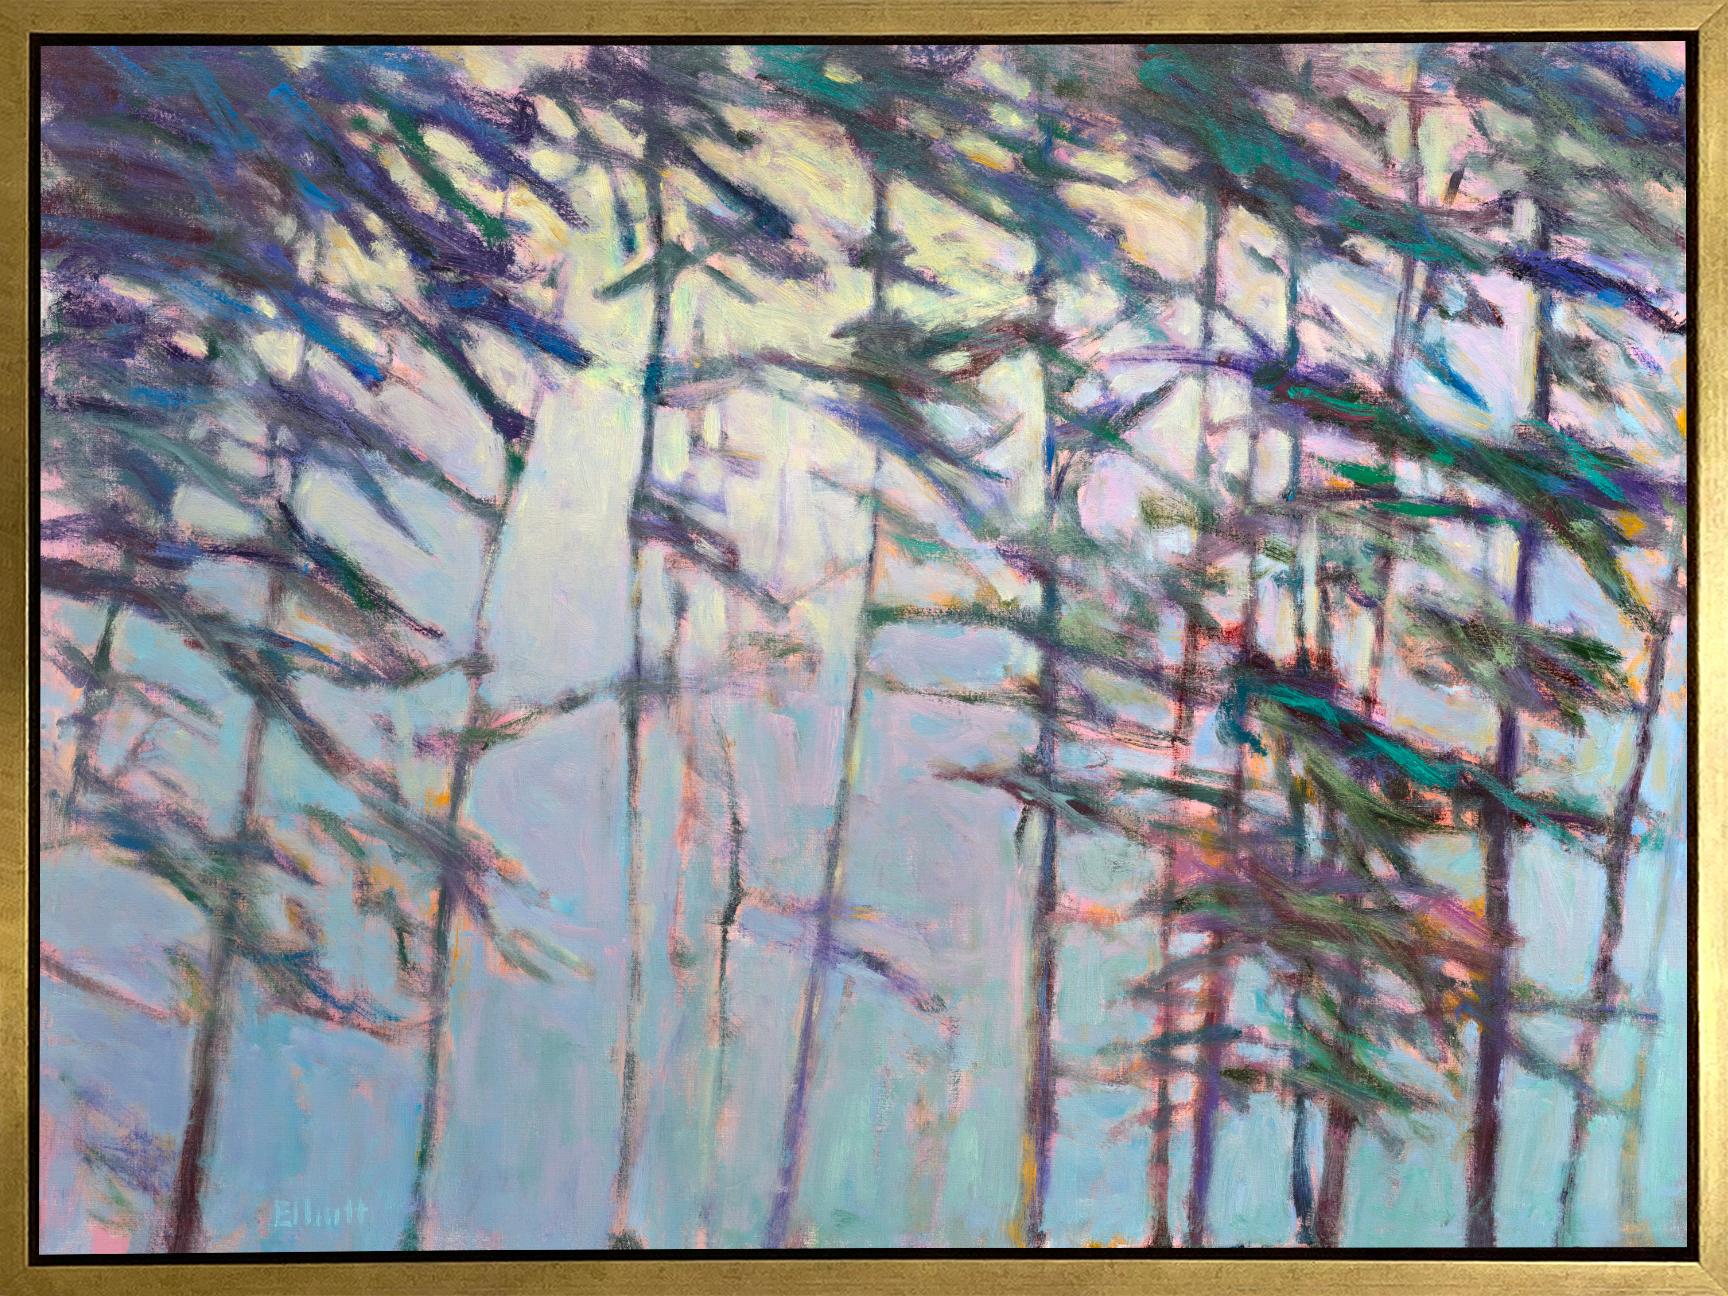 Landscape Print Ken Elliott - « Light Emerging - Diffused Blue », tirage giclée en édition limitée, 76,2 cm x 101,6 cm